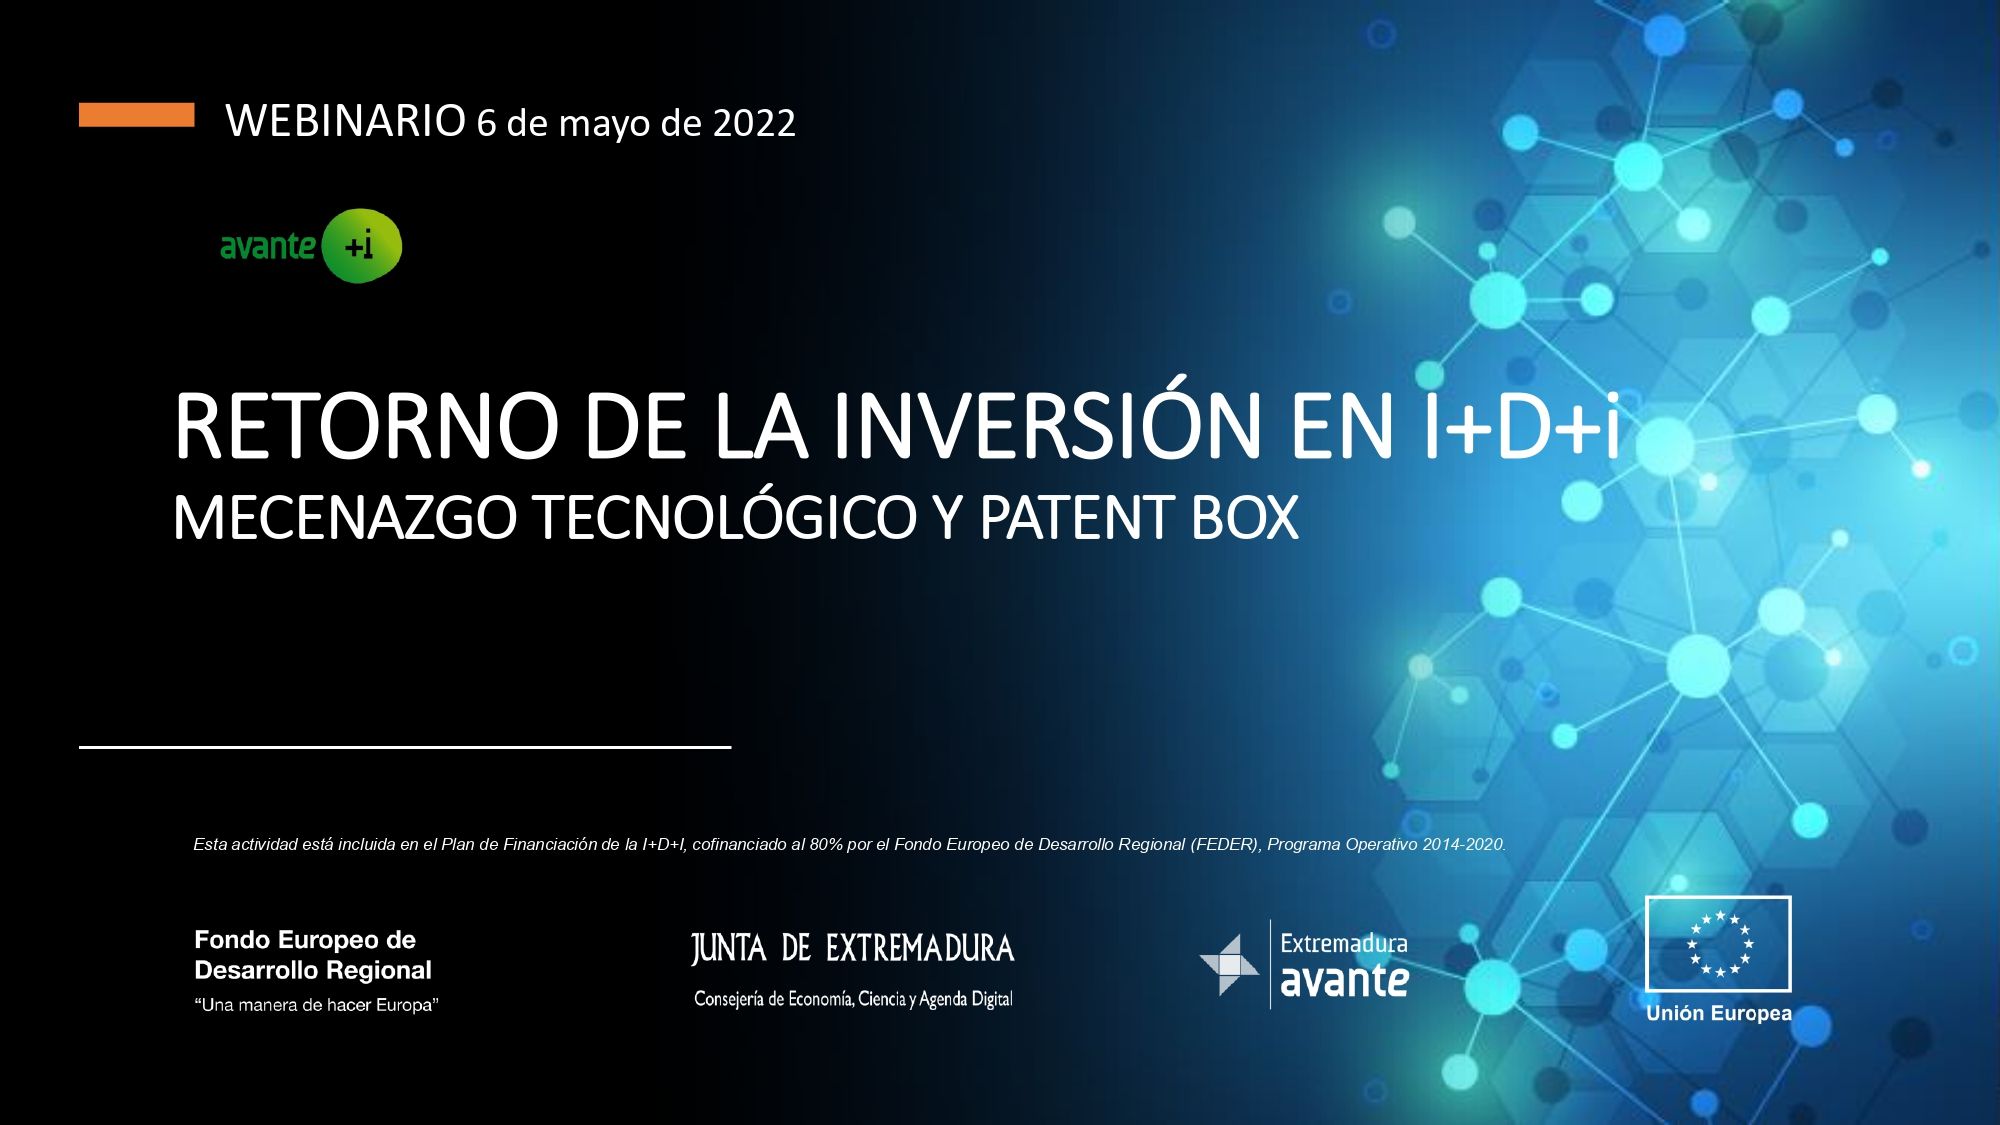 WEBINARIO "Retorno de la inversión en I+D+i: Mecenazgo Tecnológico y Patent Box"